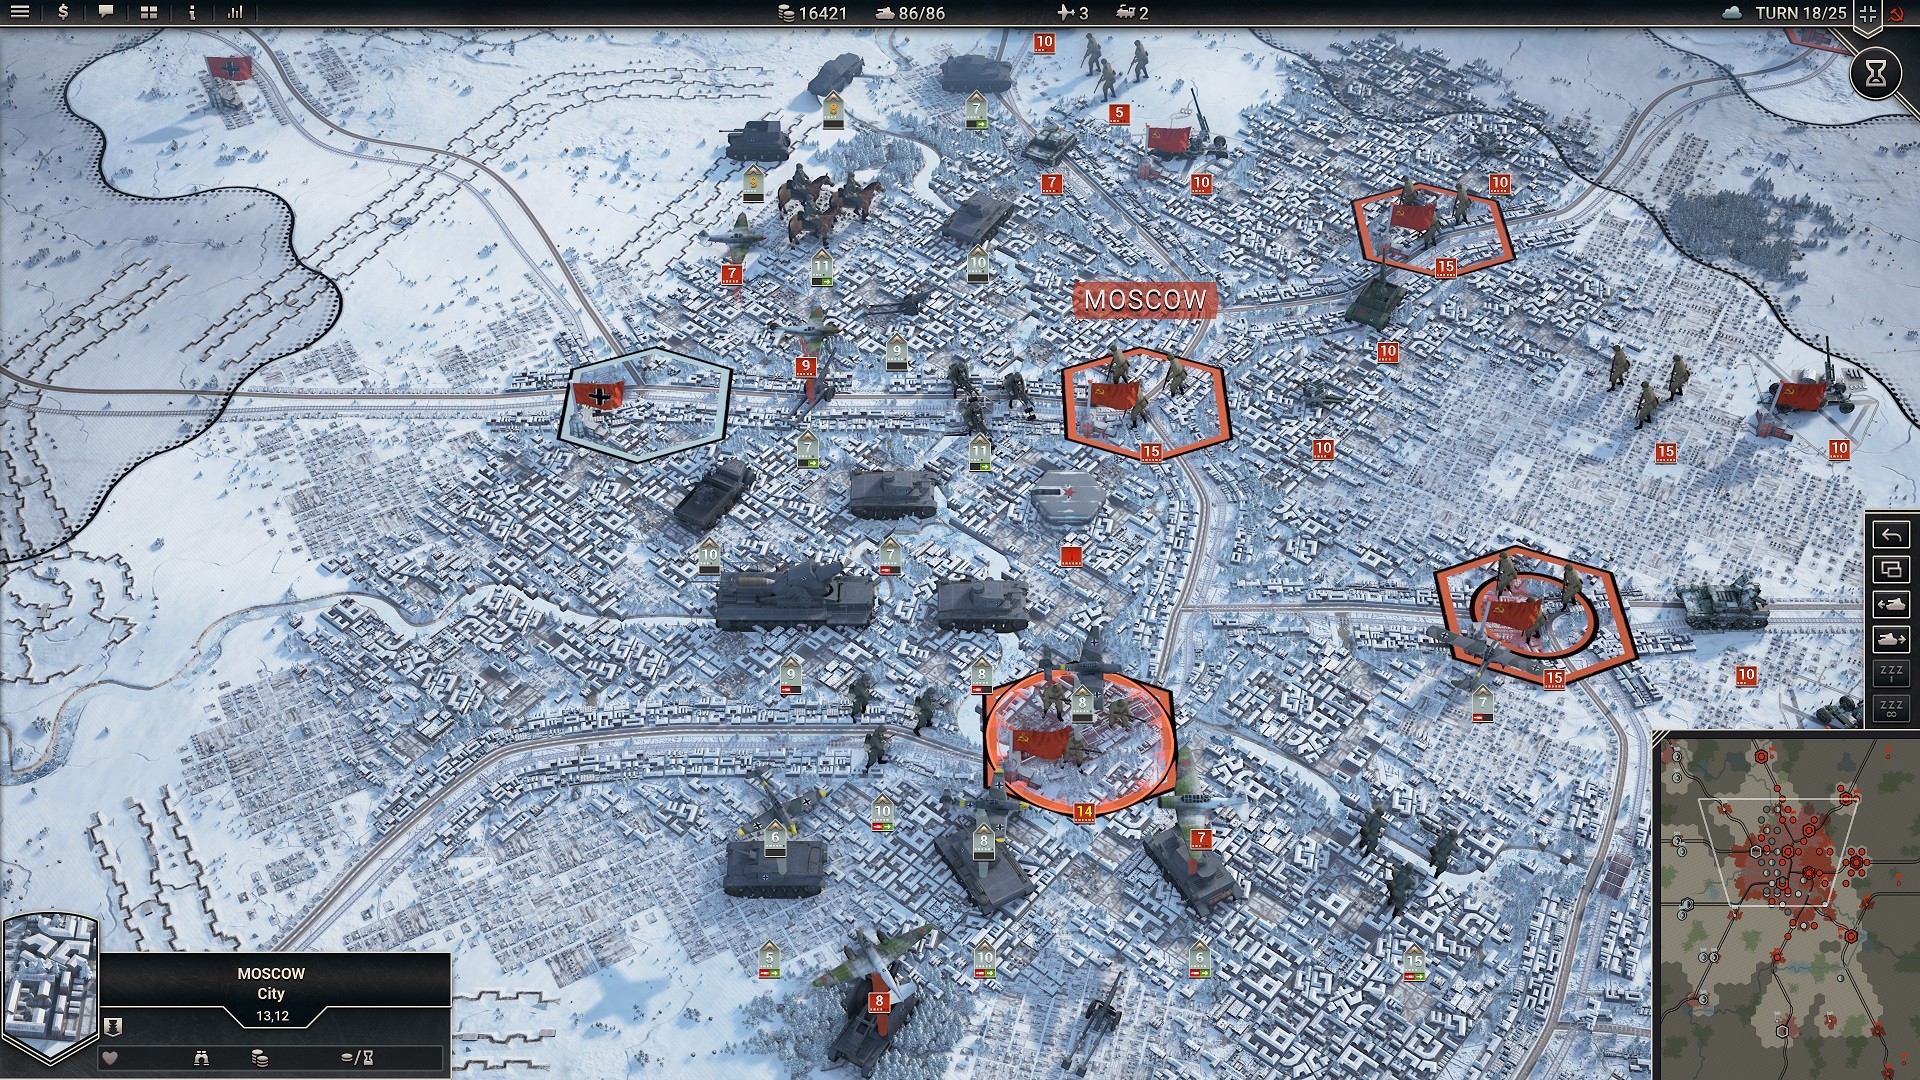 Beste tankspellen: Panzer Corps 2. Afbeelding toont tanks die een besneeuwde Moskou naderen